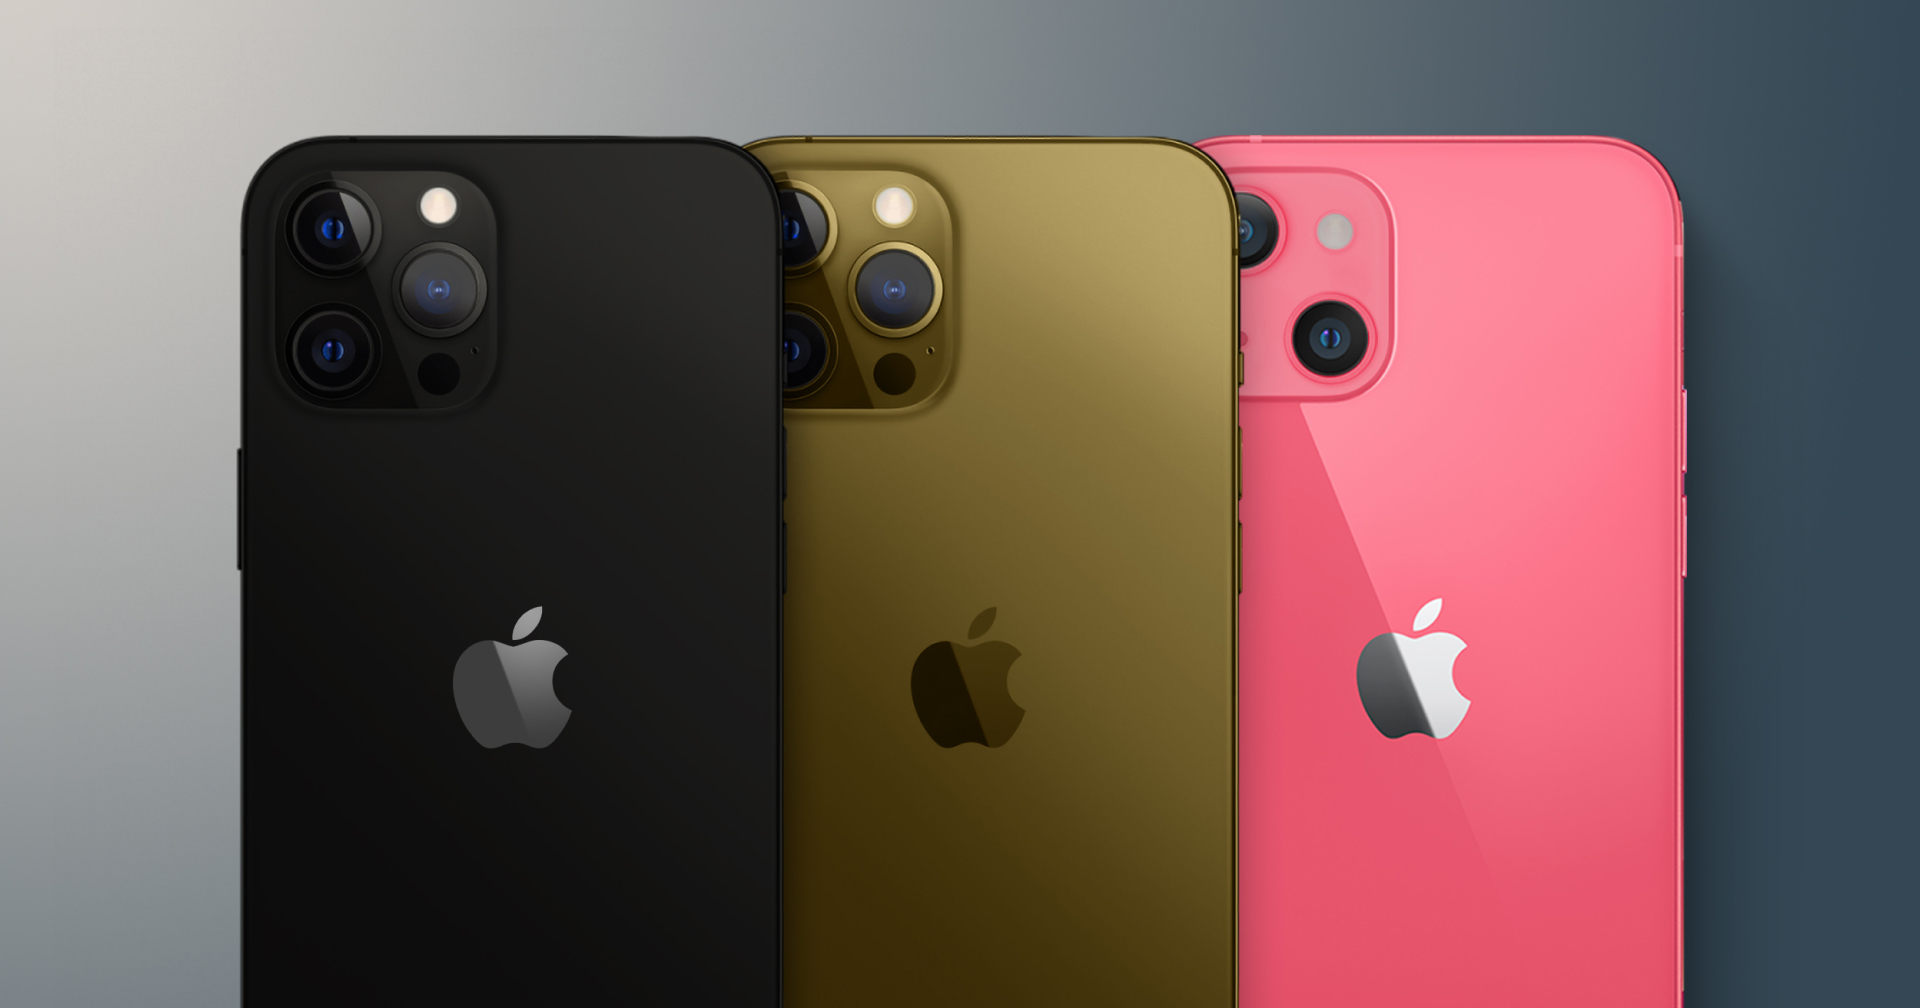 iPhone 13 โผล่เว็บร้านค้าอาจมี 3 สีใหม่ ชมพู ดำ และบรอนซ์ แต่มีตัวเลือกความจุน้อยลง